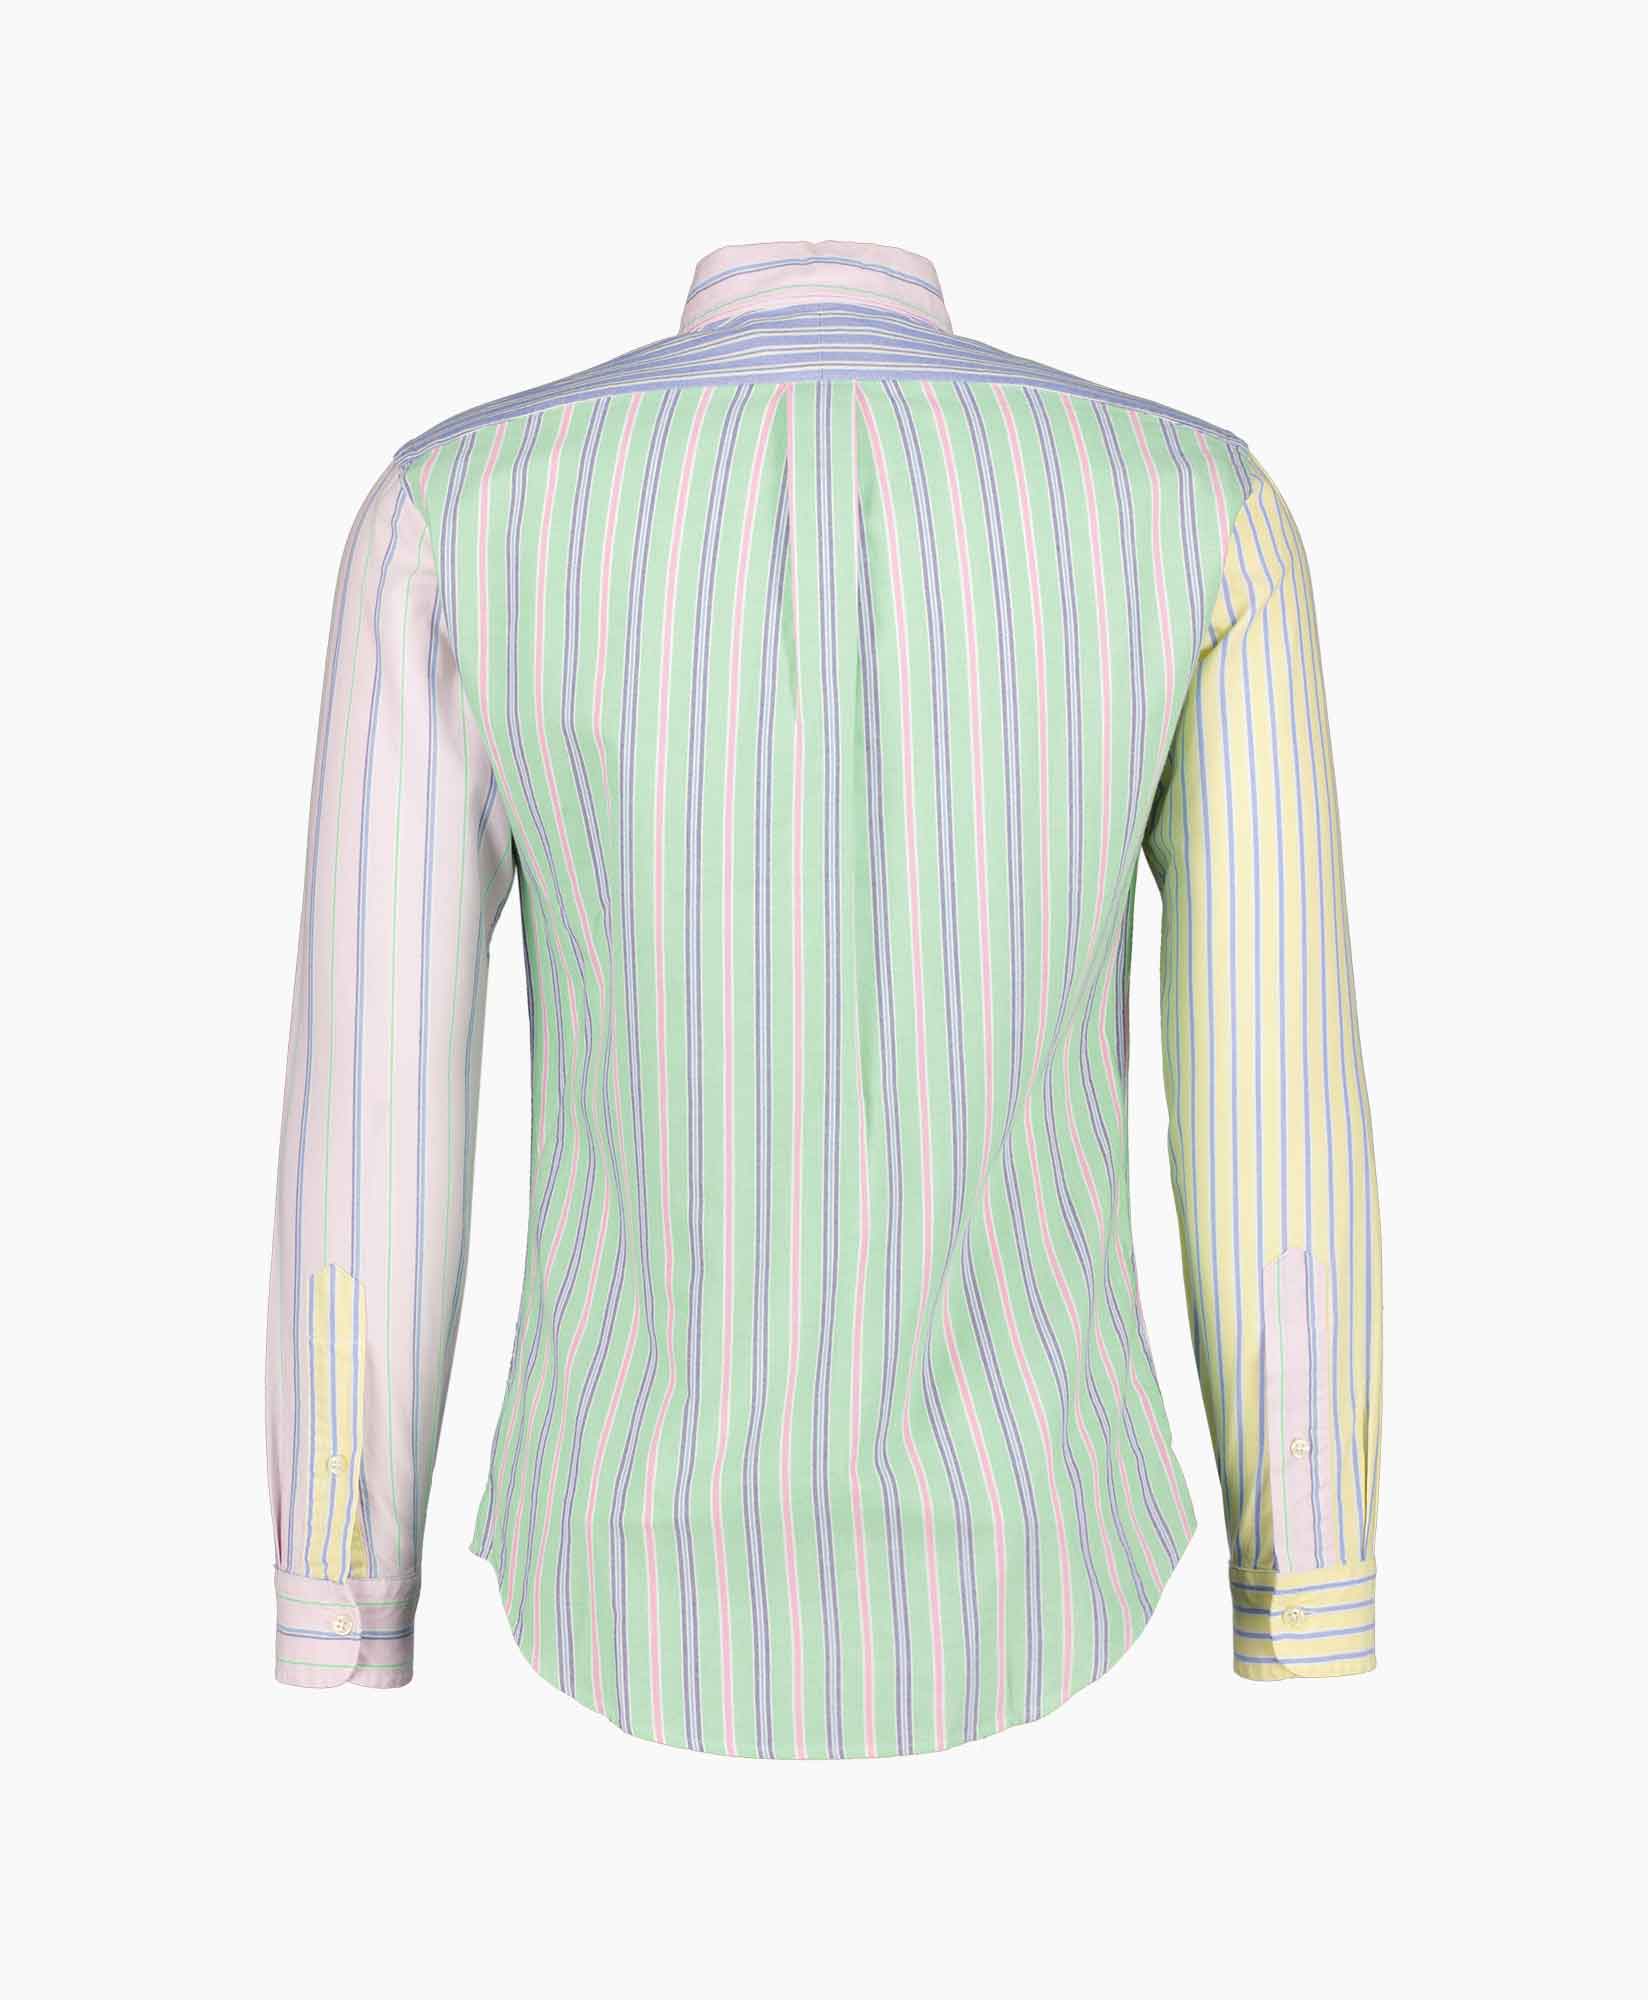 Ralph Lauren Overhemd 710906620001 Print + 2 Kleurig